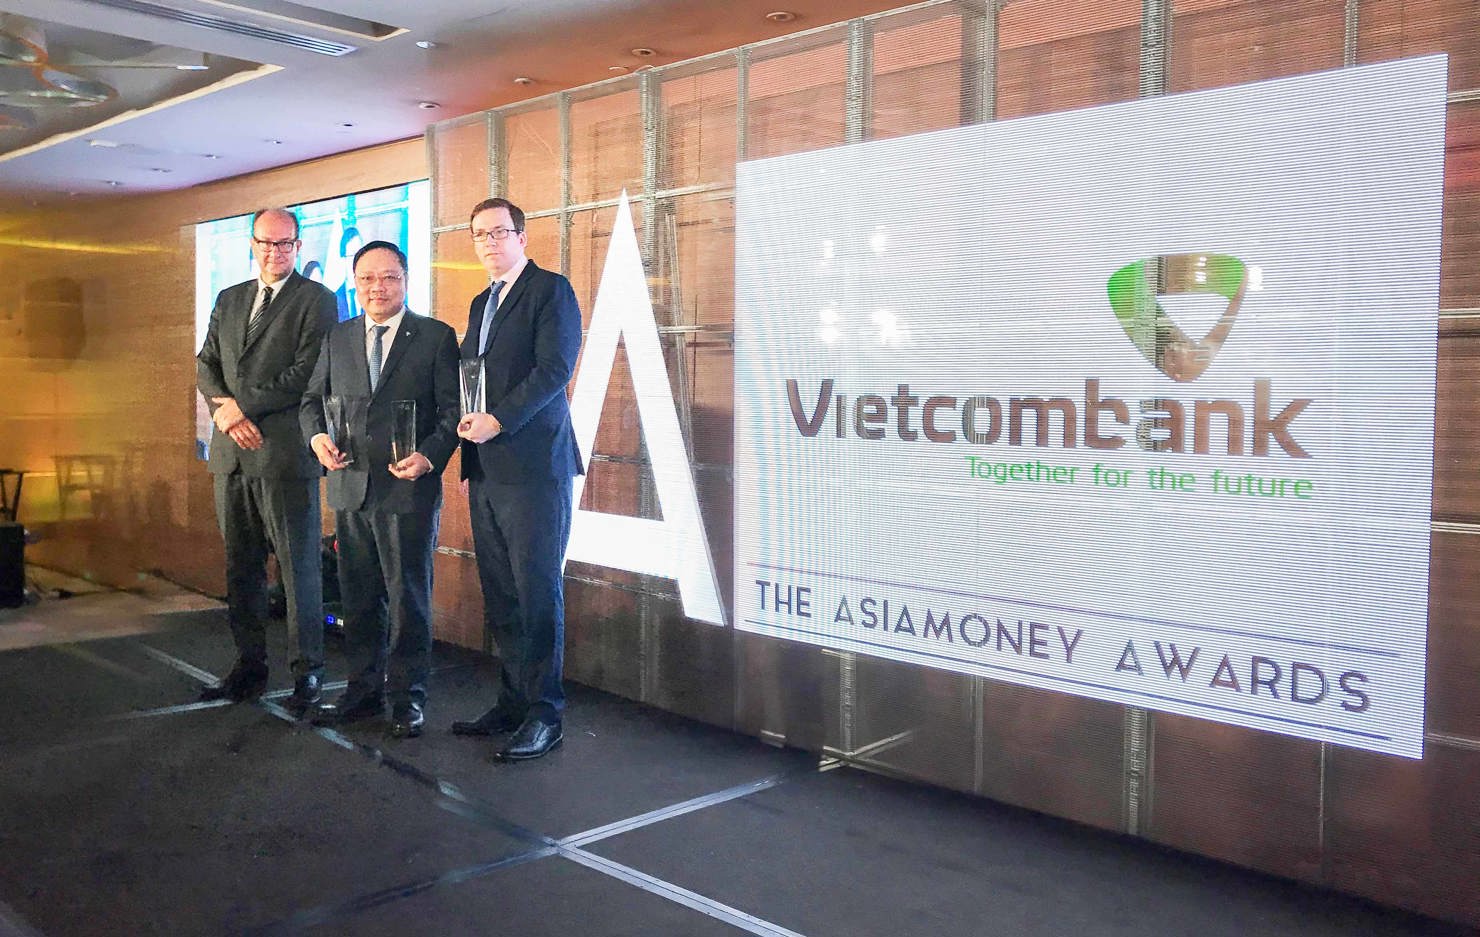 Đại diện Vietcombank, ông Phạm Anh Tuấn – Ủy viên HĐQT (đứng giữa) nhận giải thưởng của Tạp chí Asiamoney